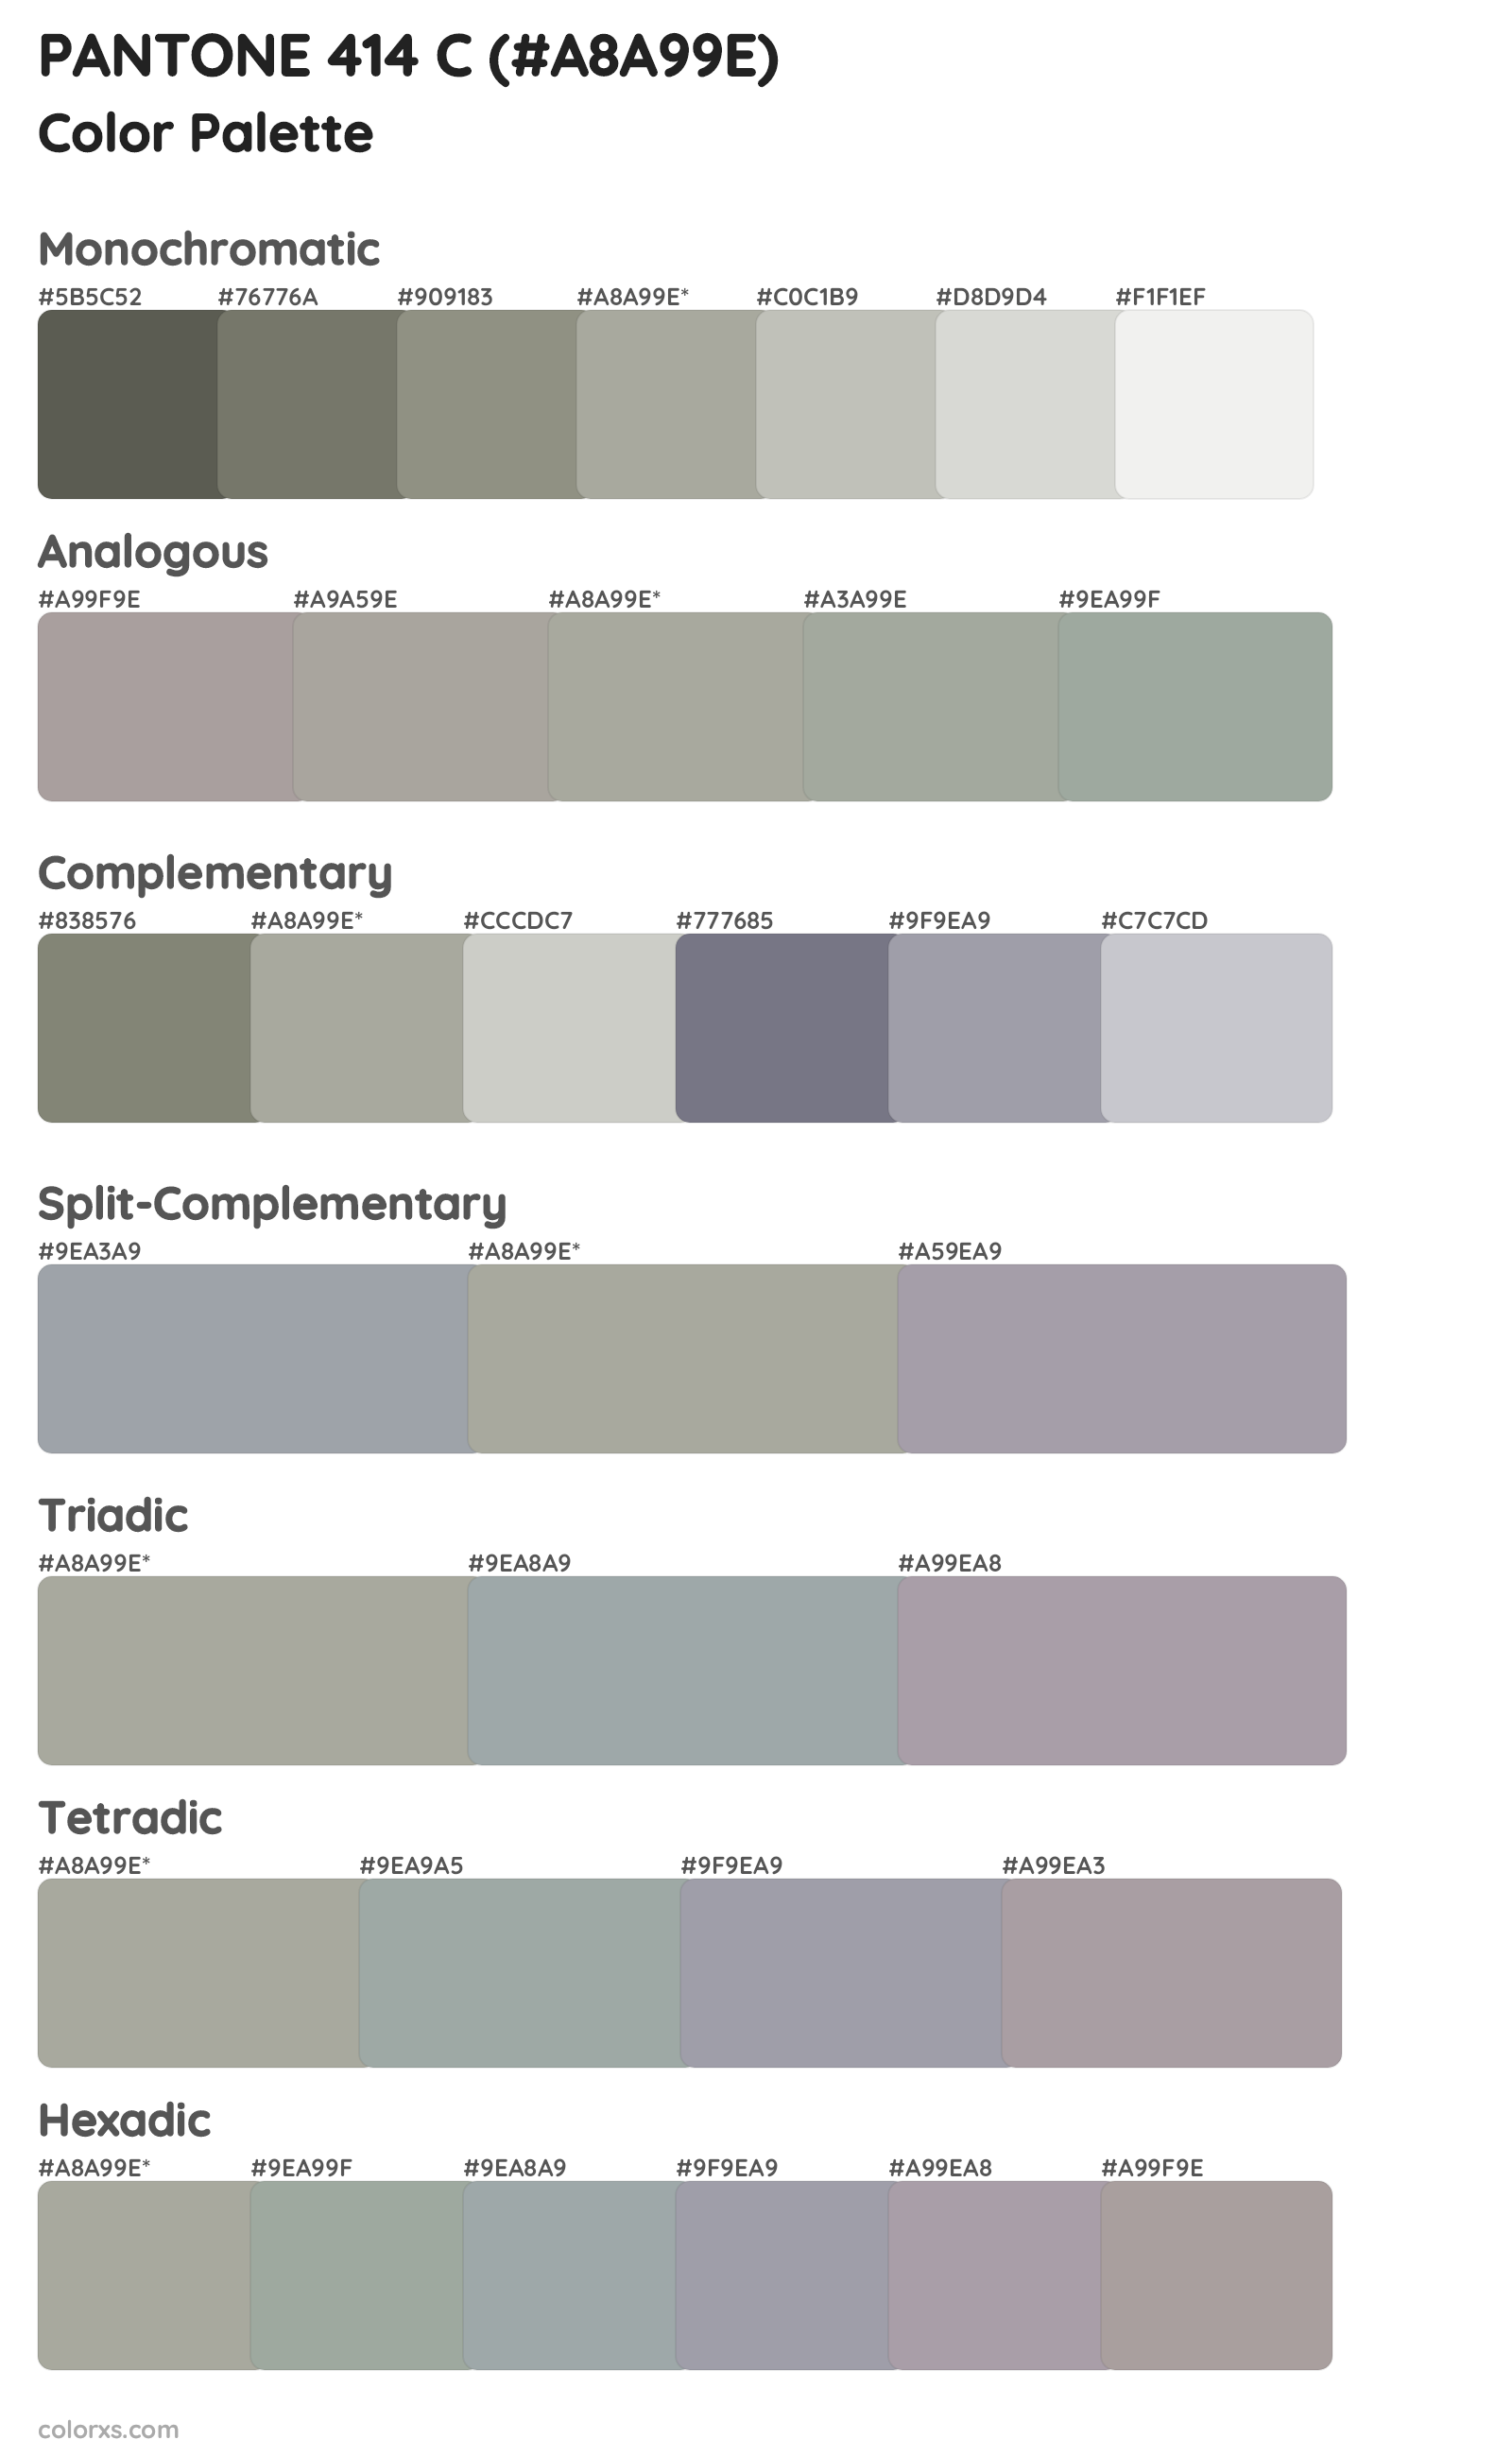 PANTONE 414 C Color Scheme Palettes